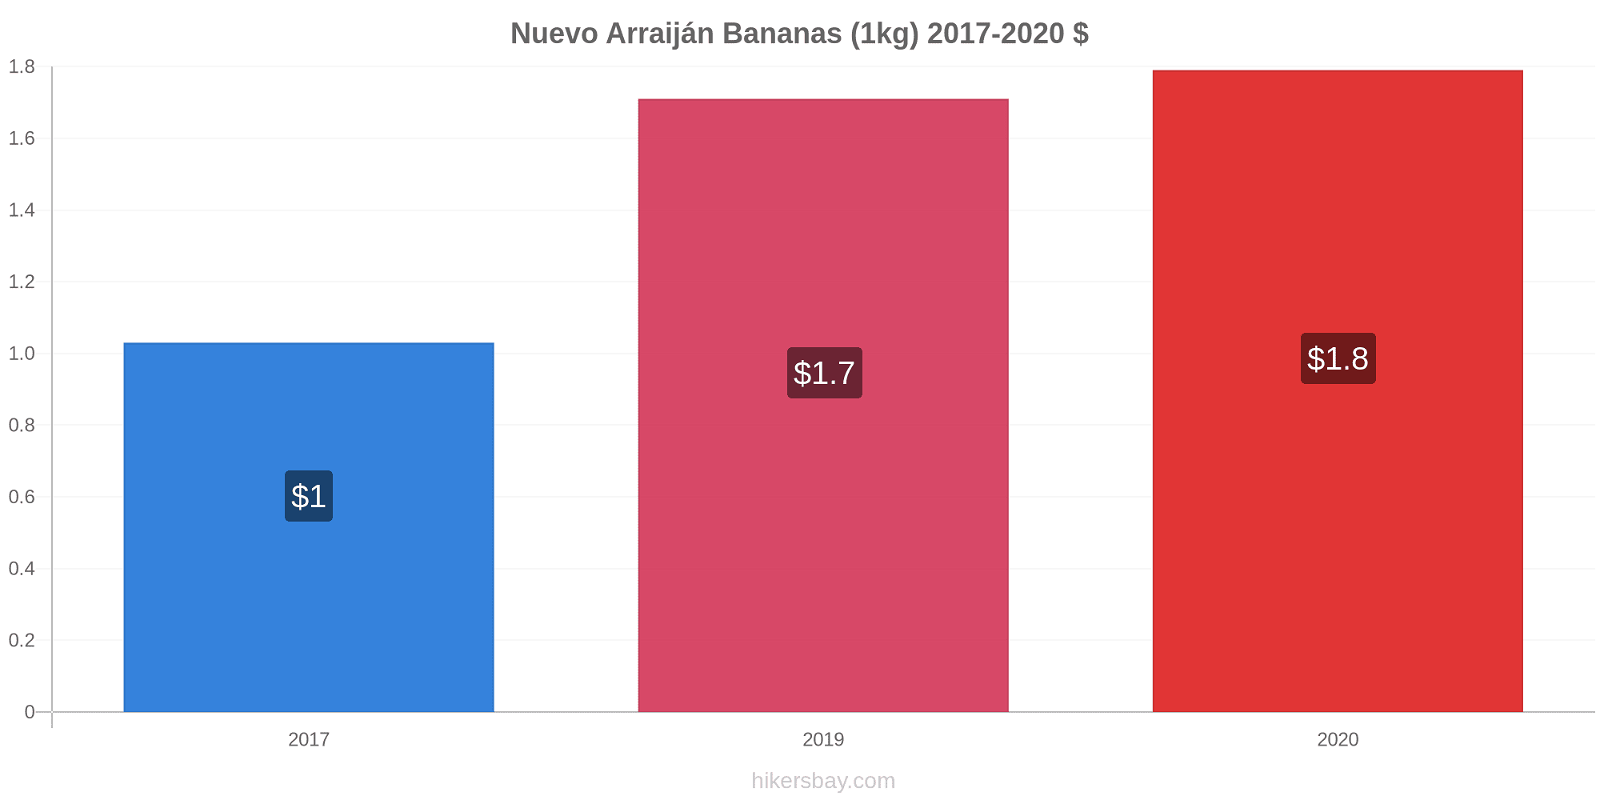 Nuevo Arraiján variação de preço Banana (1kg) hikersbay.com